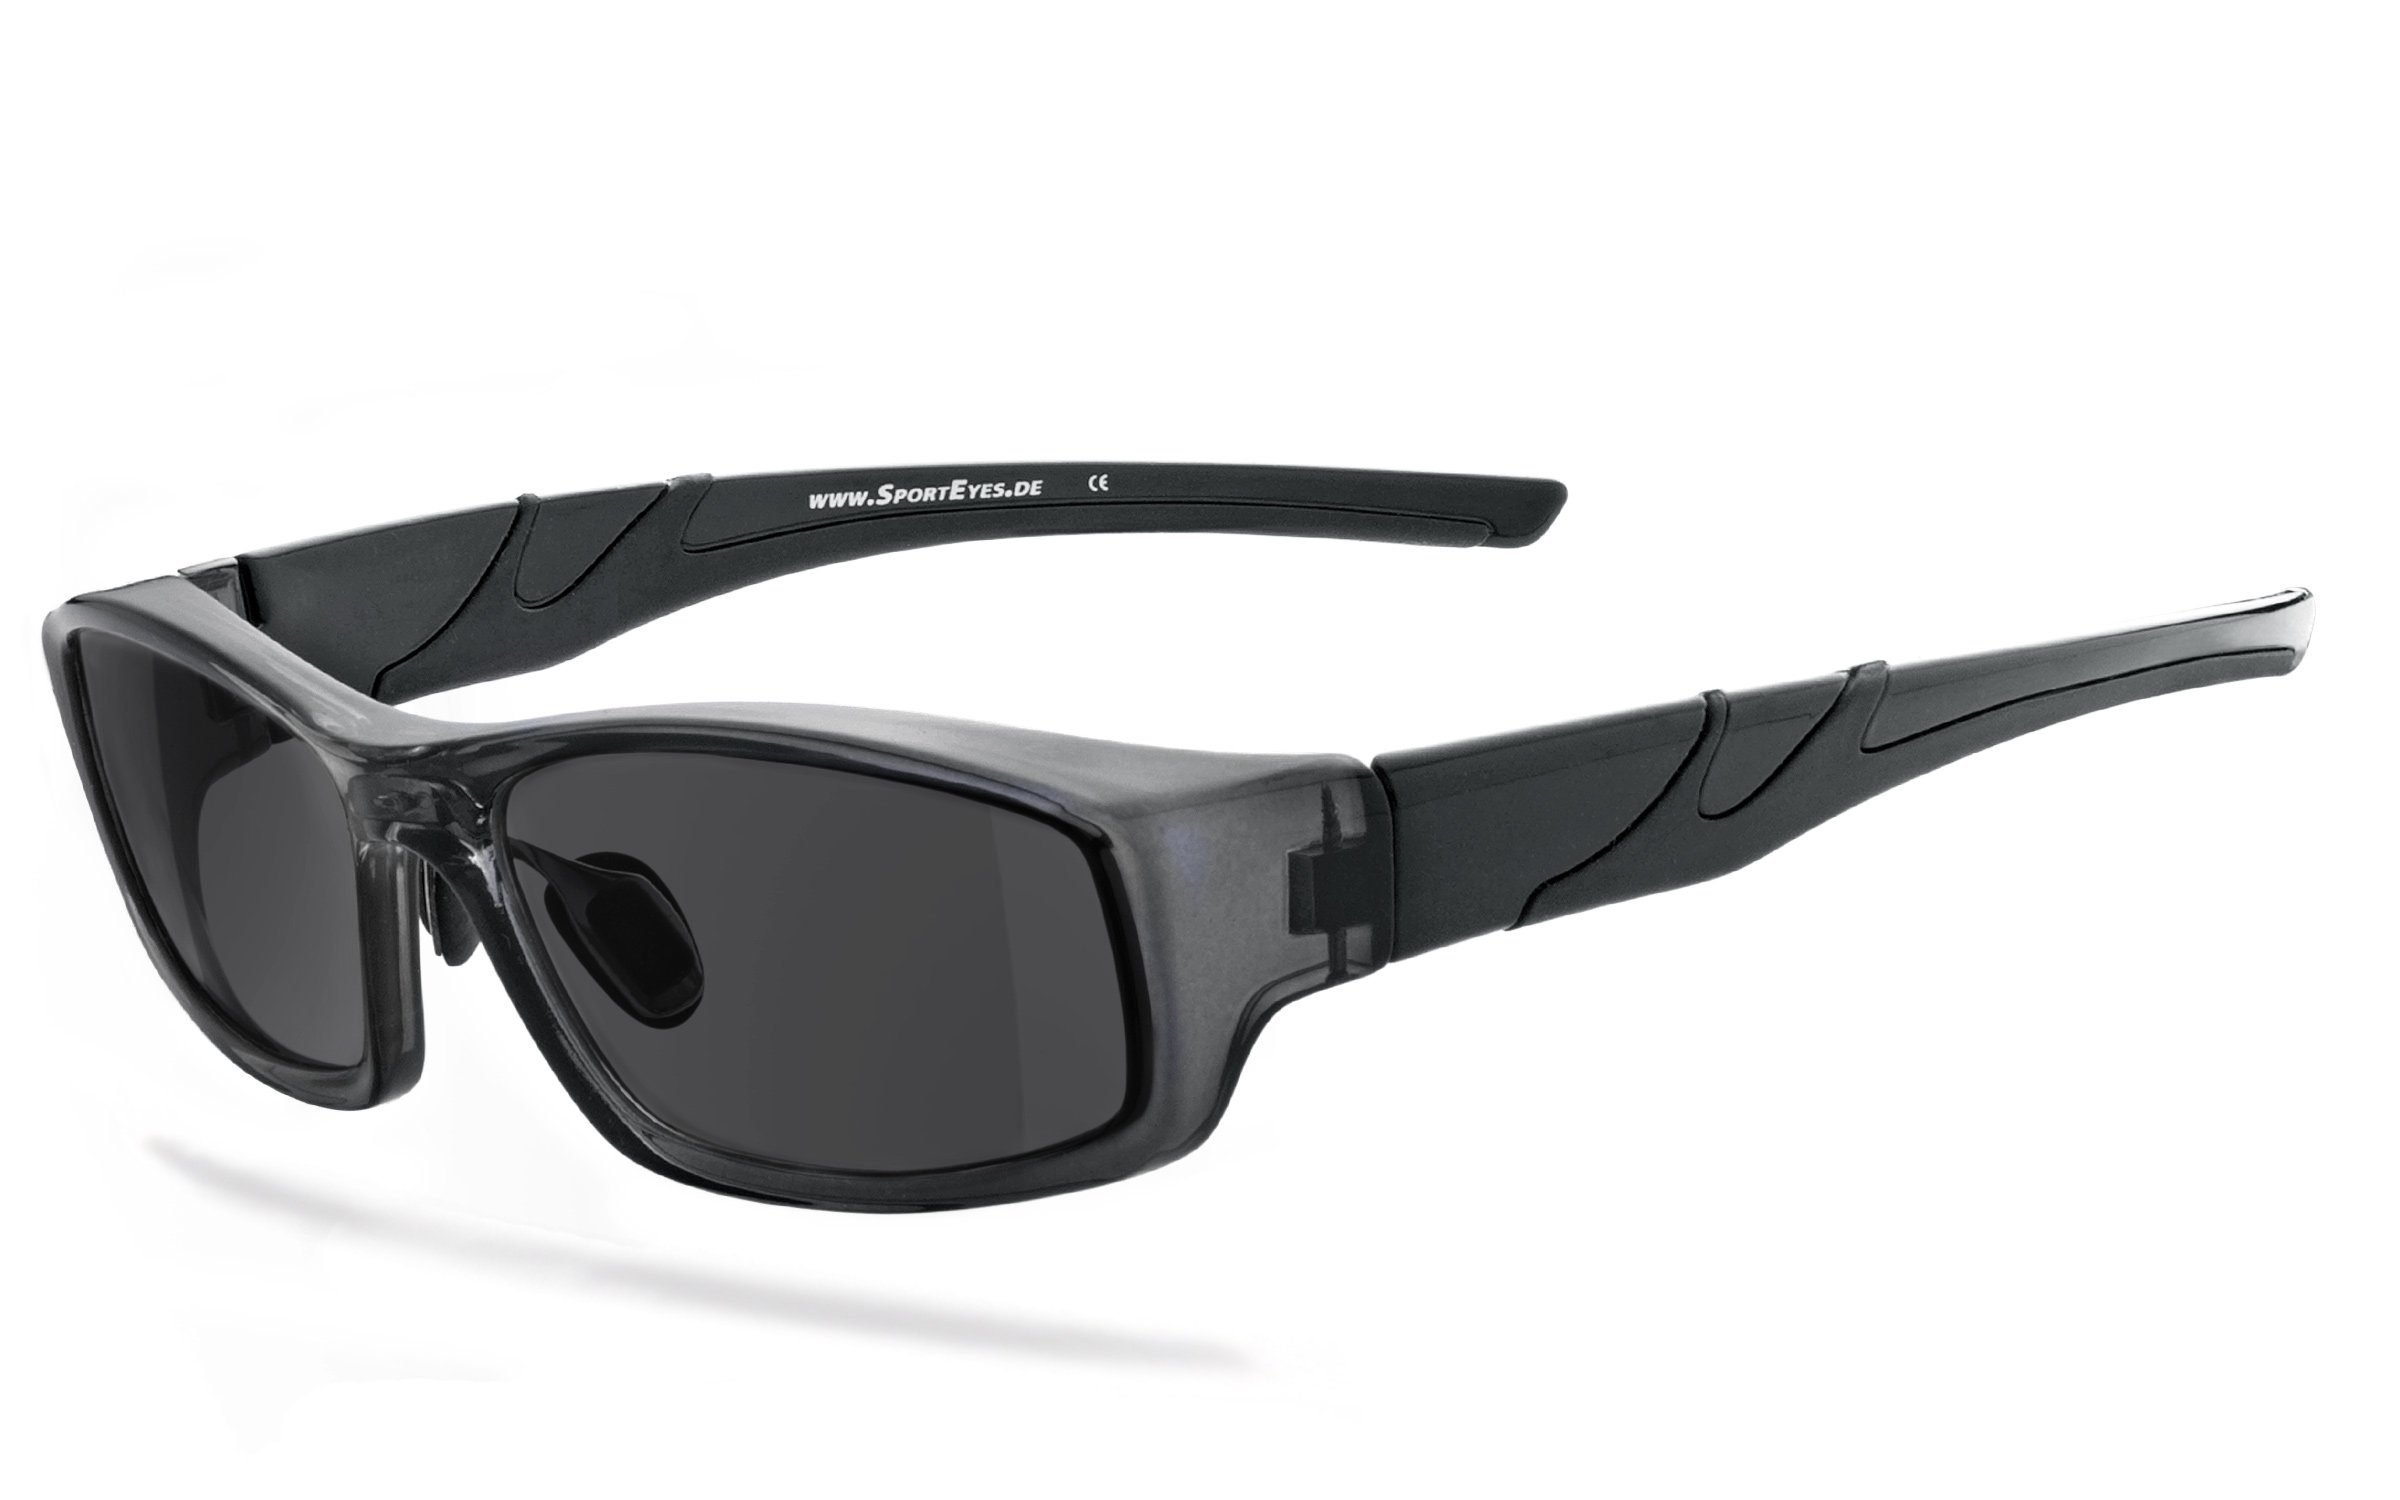 Sonnenbrille mit SportEyes - HSE 3040cb Qualitätsgläser Antibeschlagbeschichtung HLT®